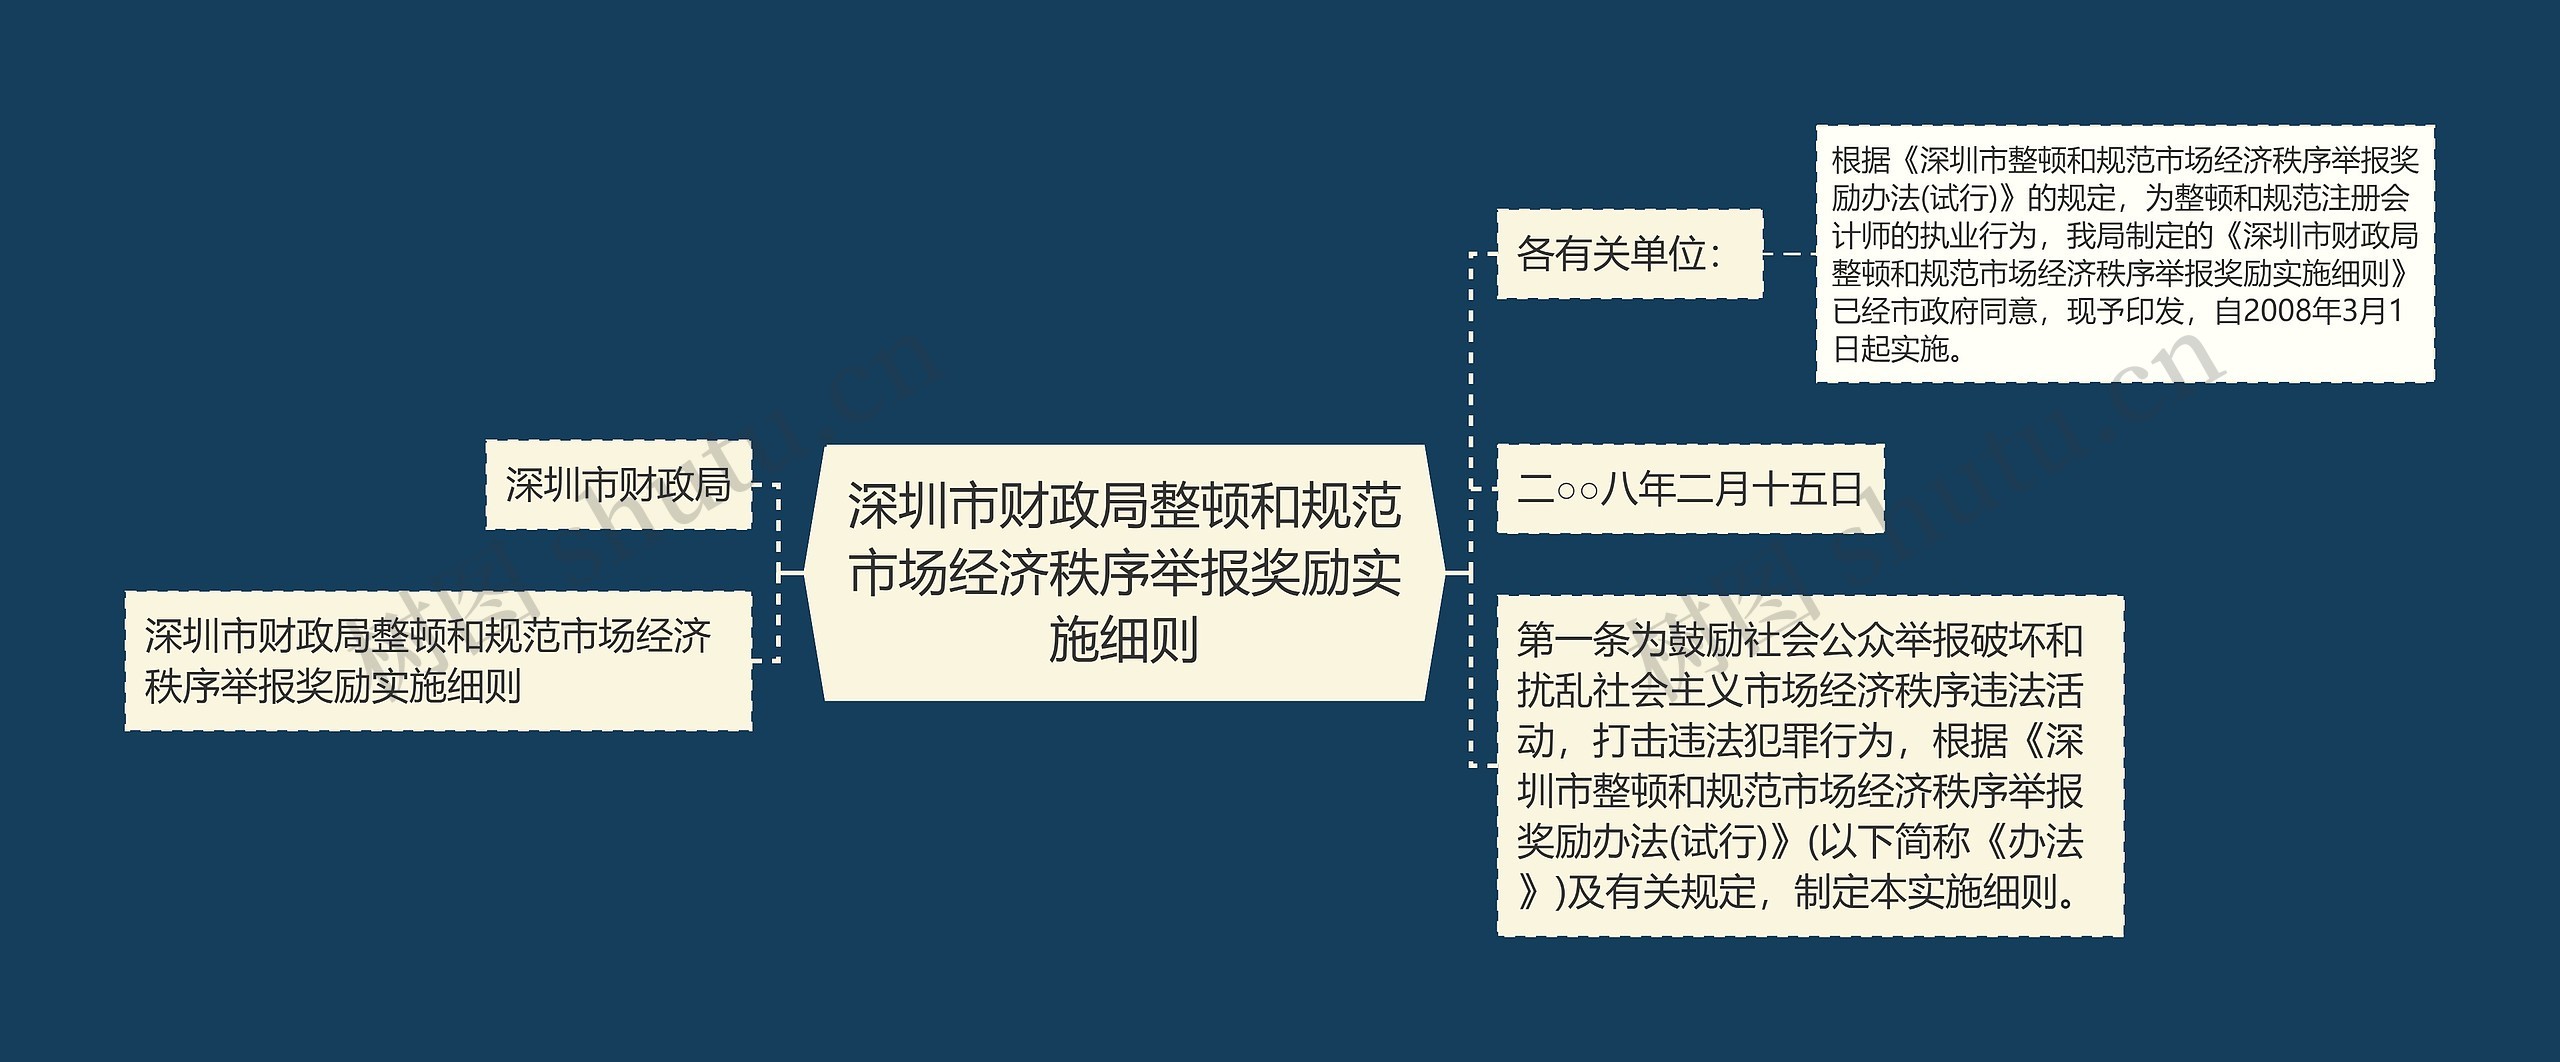 深圳市财政局整顿和规范市场经济秩序举报奖励实施细则